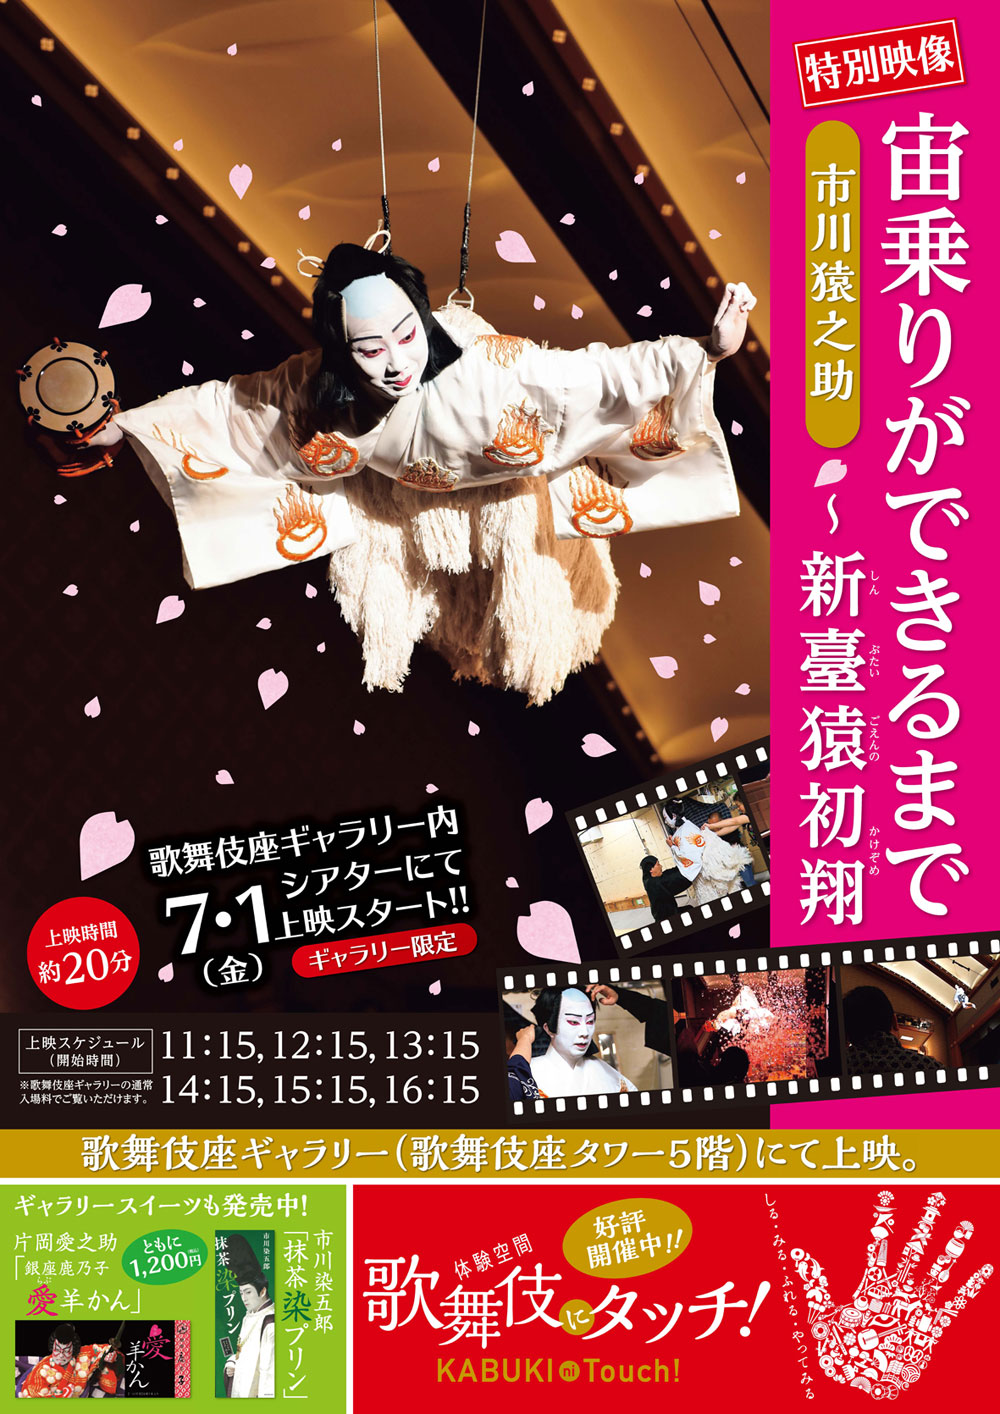 猿之助の歌舞伎座ギャラリー特別映像『宙乗りができるまで』7月公開